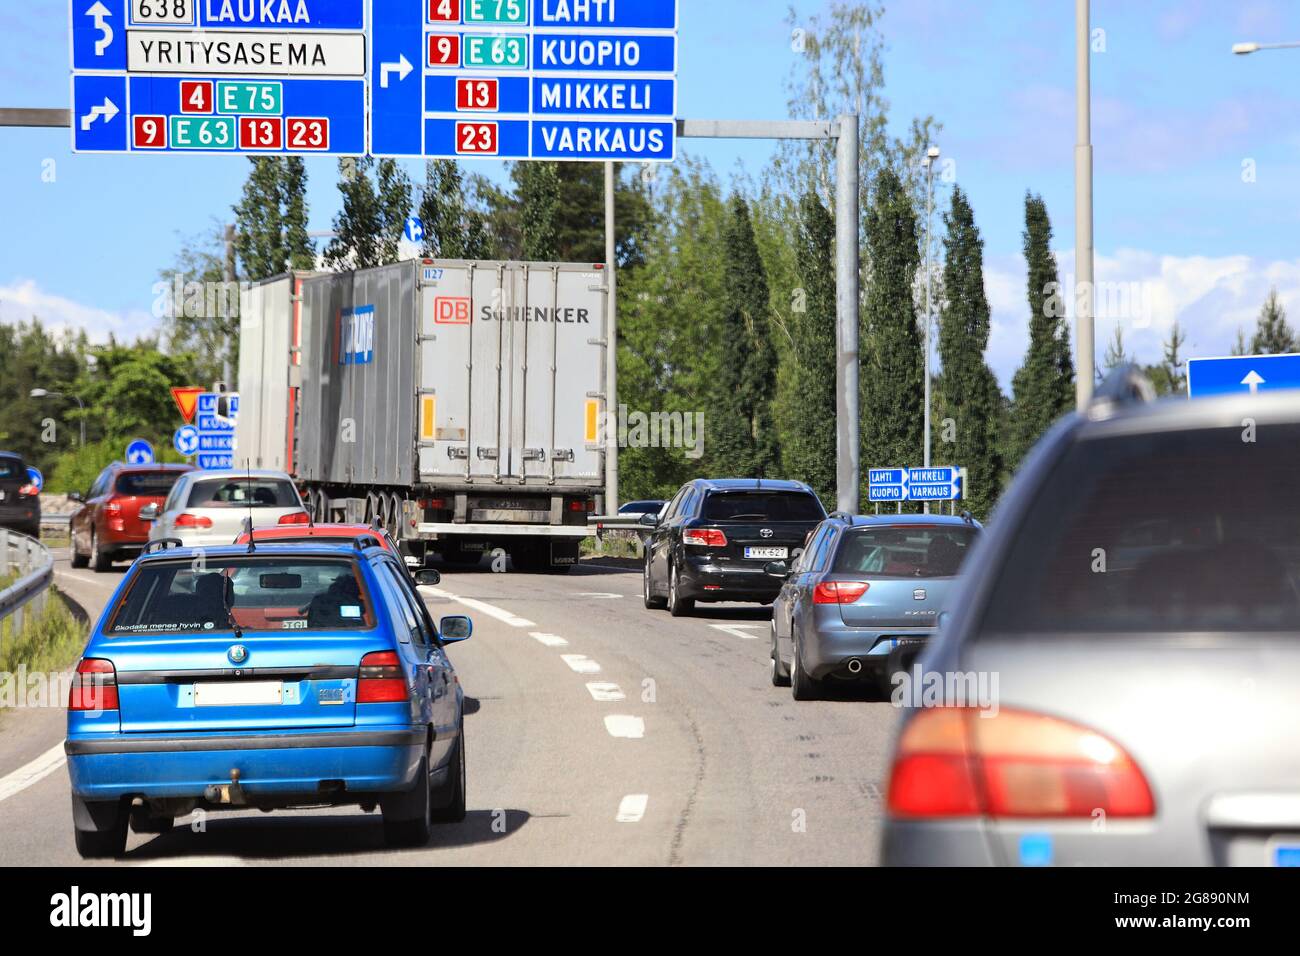 Tráfico congestionado, coches y camiones en una rotonda durante un fin de semana de verano en la carretera E63 en Vaajakoski, Finlandia. 7 de julio de 2017. Foto de stock